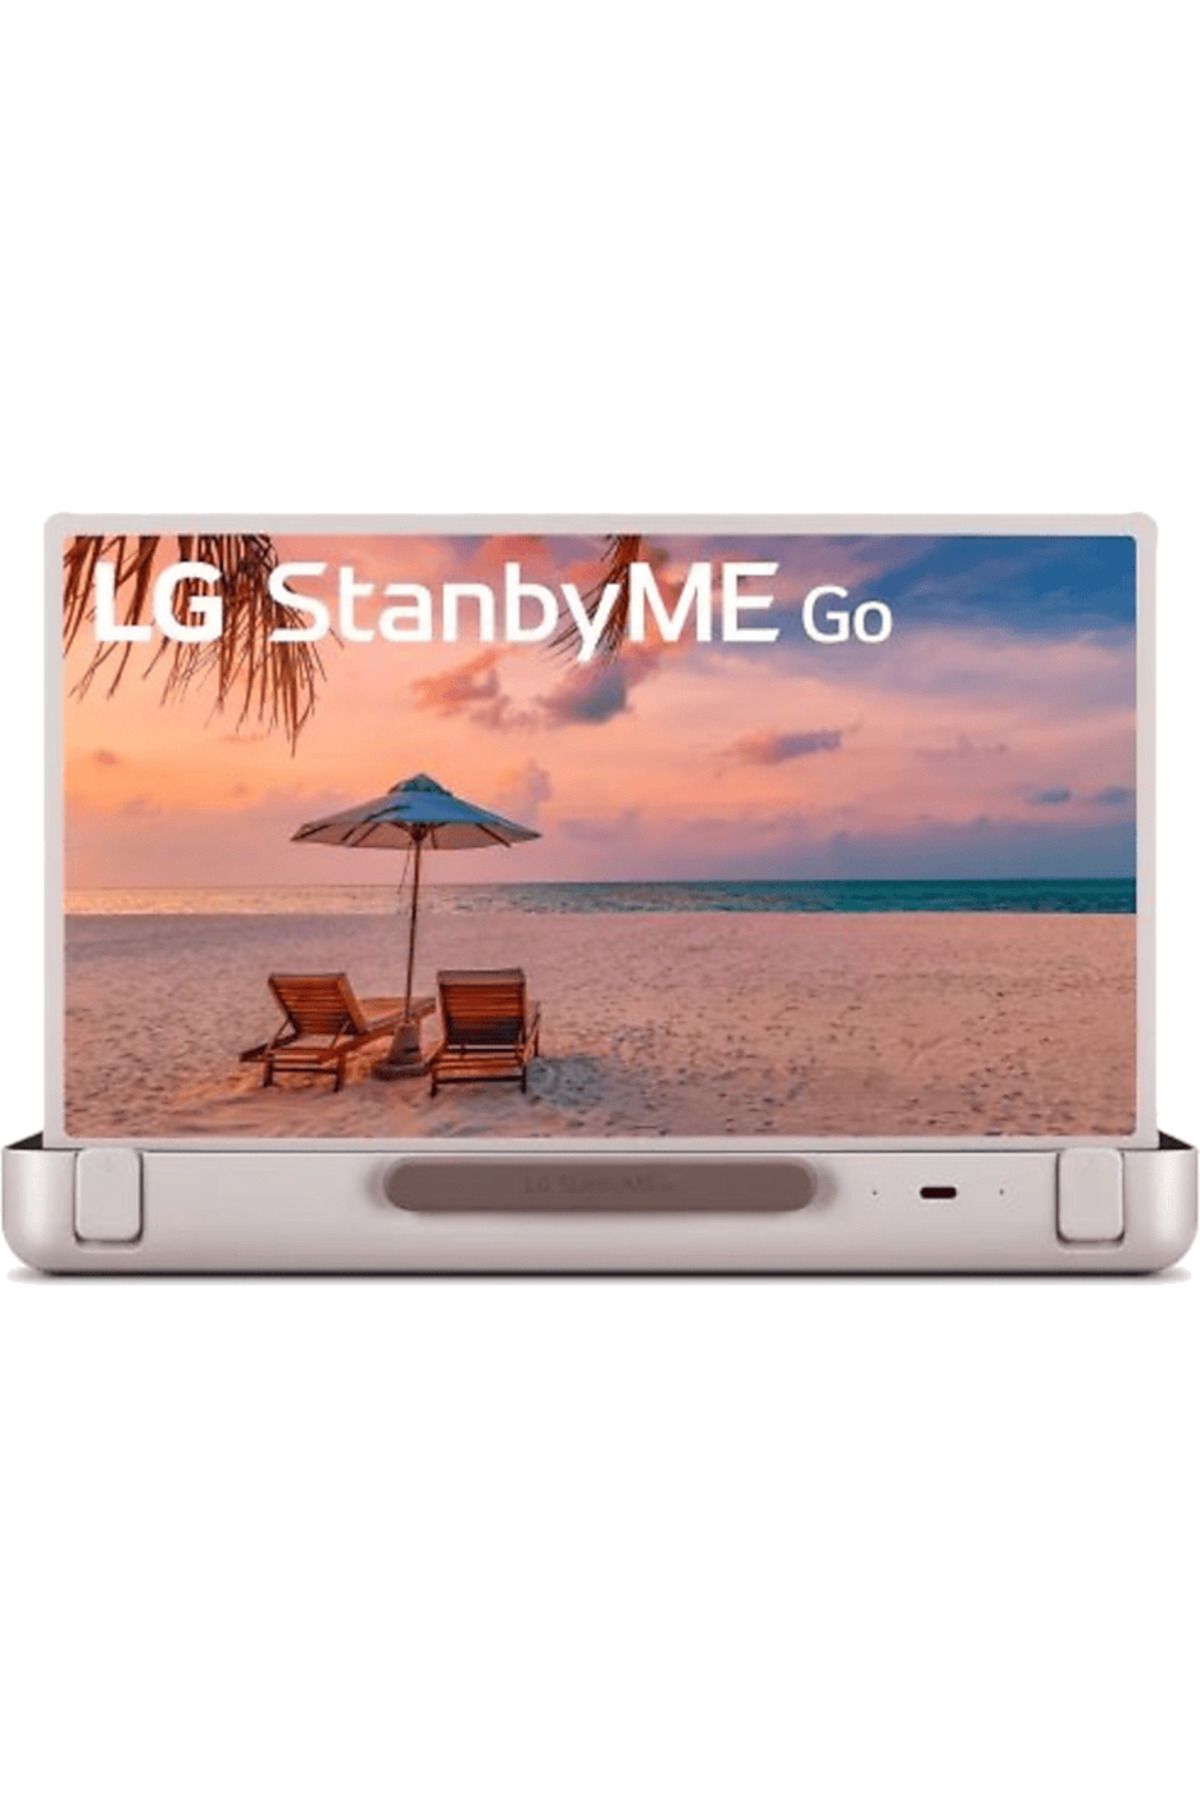 LG StanbyME Go 27 inç Çanta Tasarımlı Dokunmatik Ekranlı Smart Full HD TV Gri